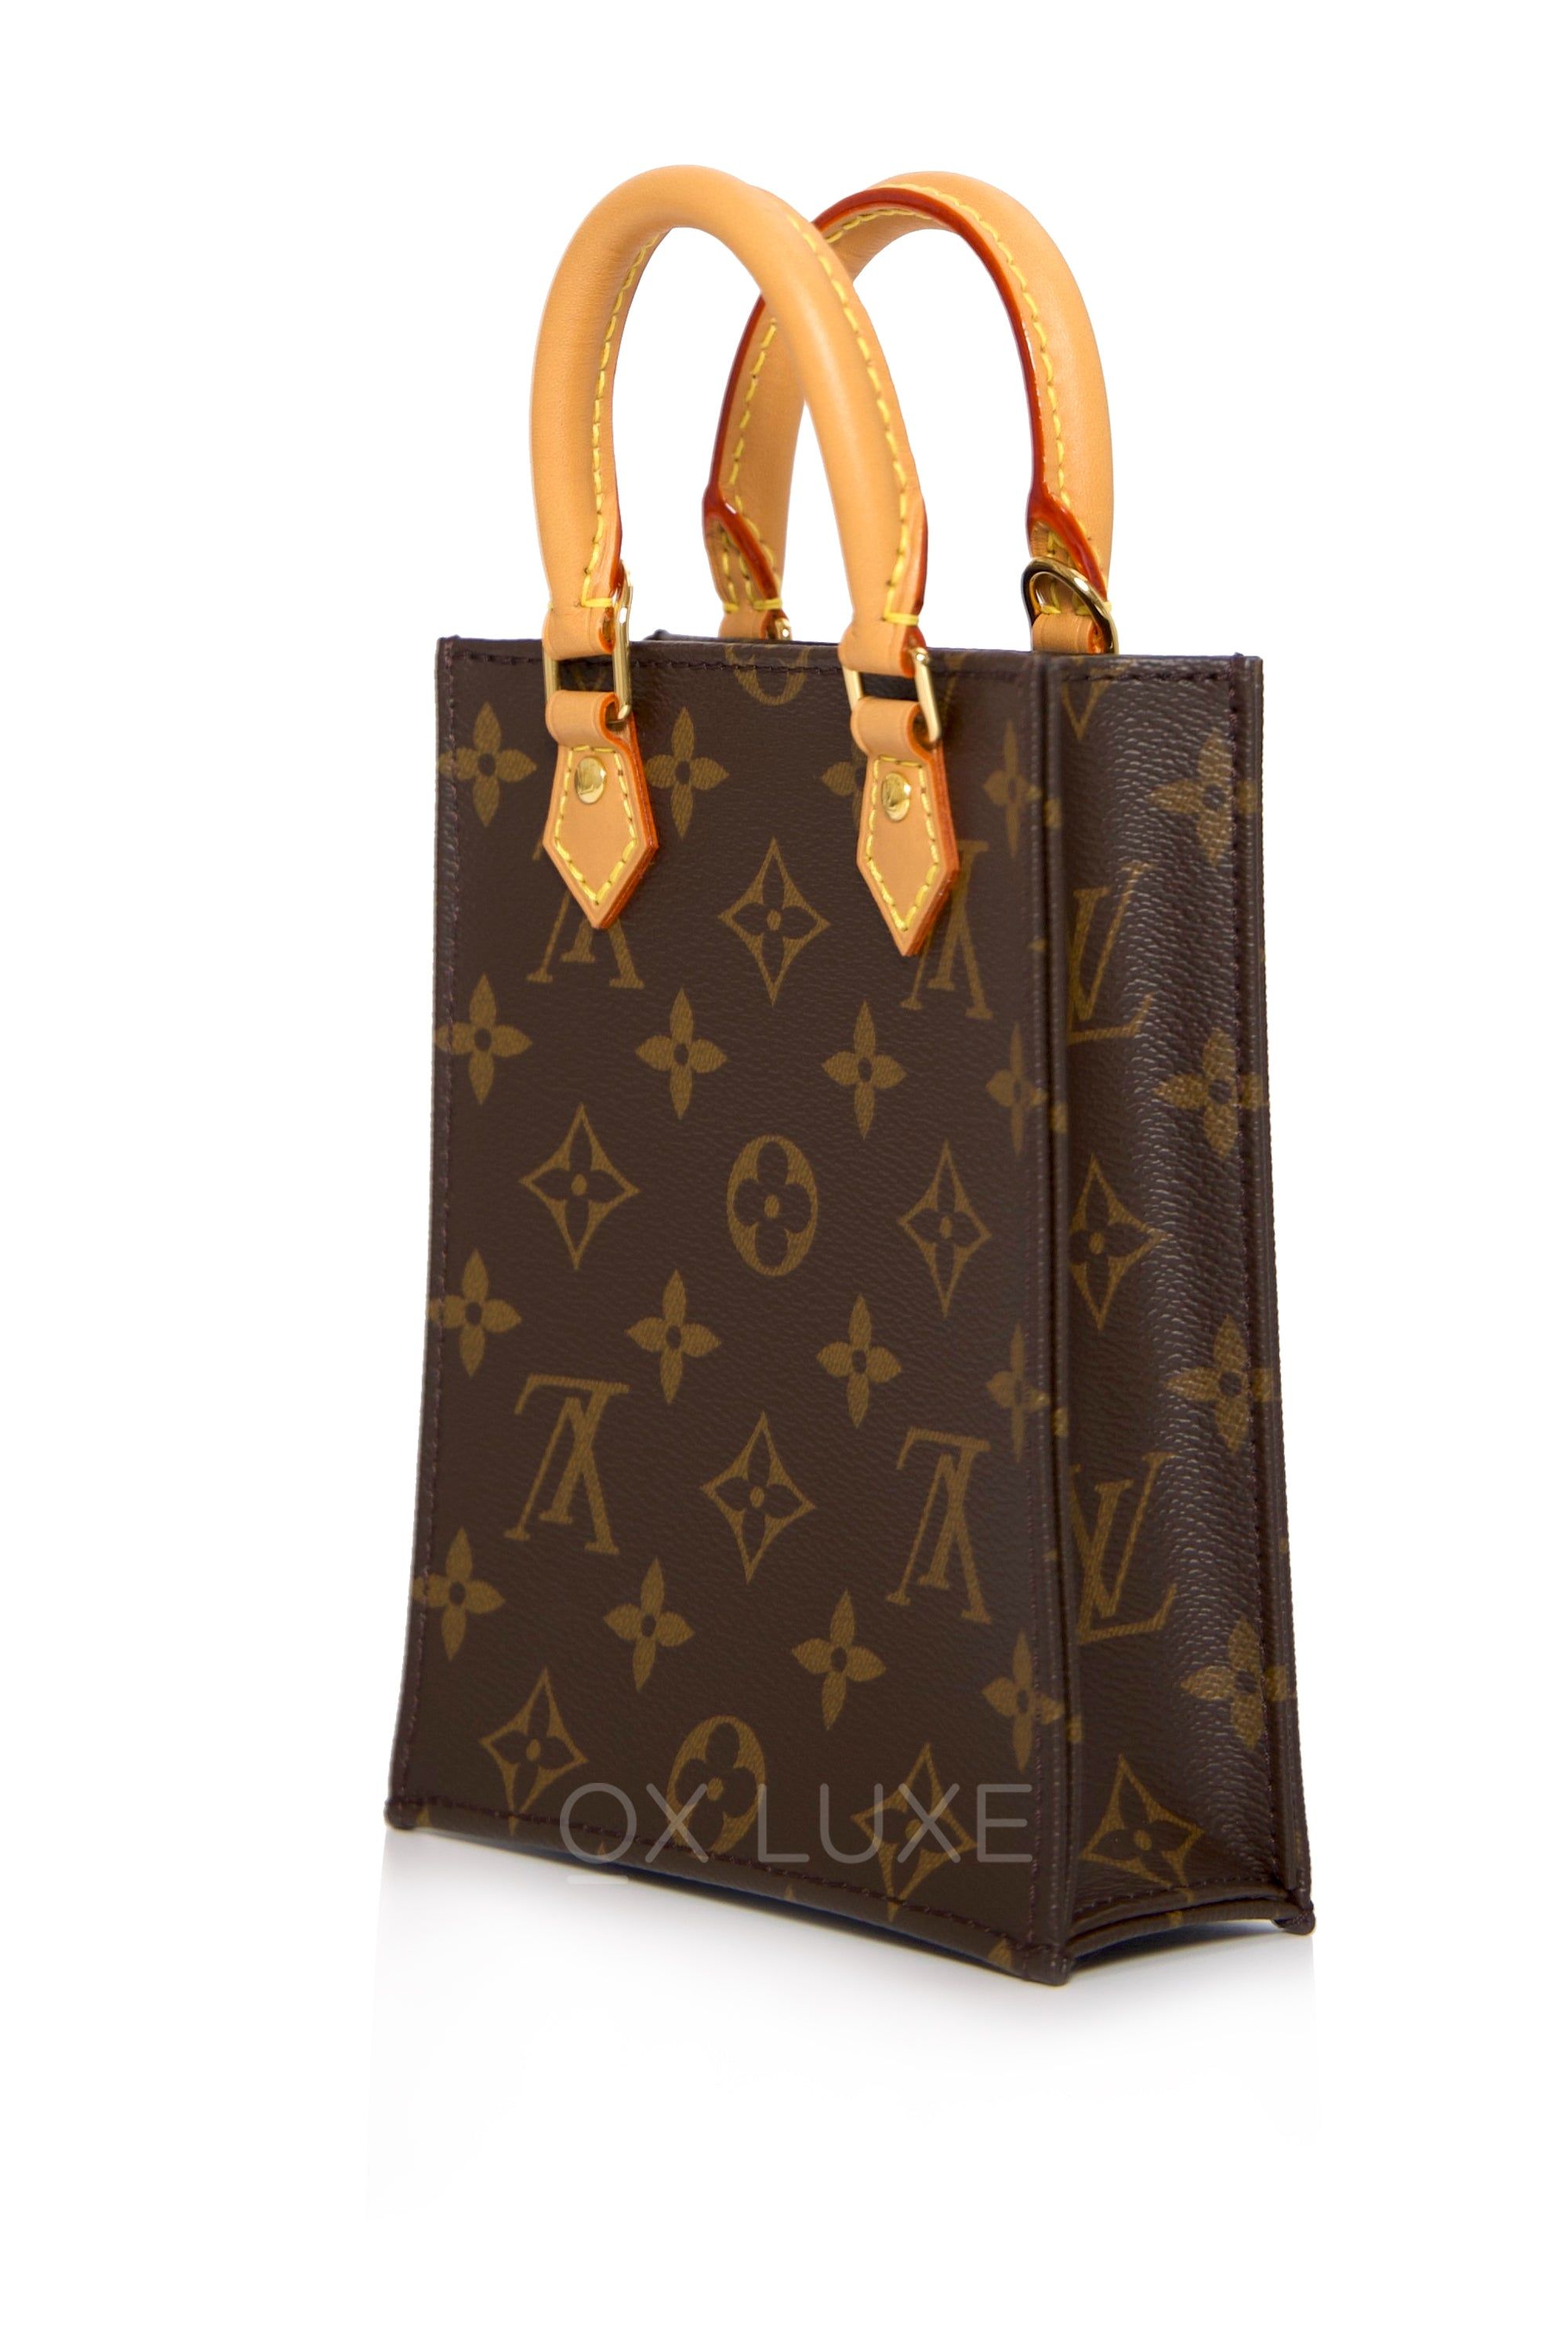 Louis+Vuitton+Petit+Sac+Plat+Satchel+Top+Handle+Bag+Pastel+Pink+Canvas for  sale online